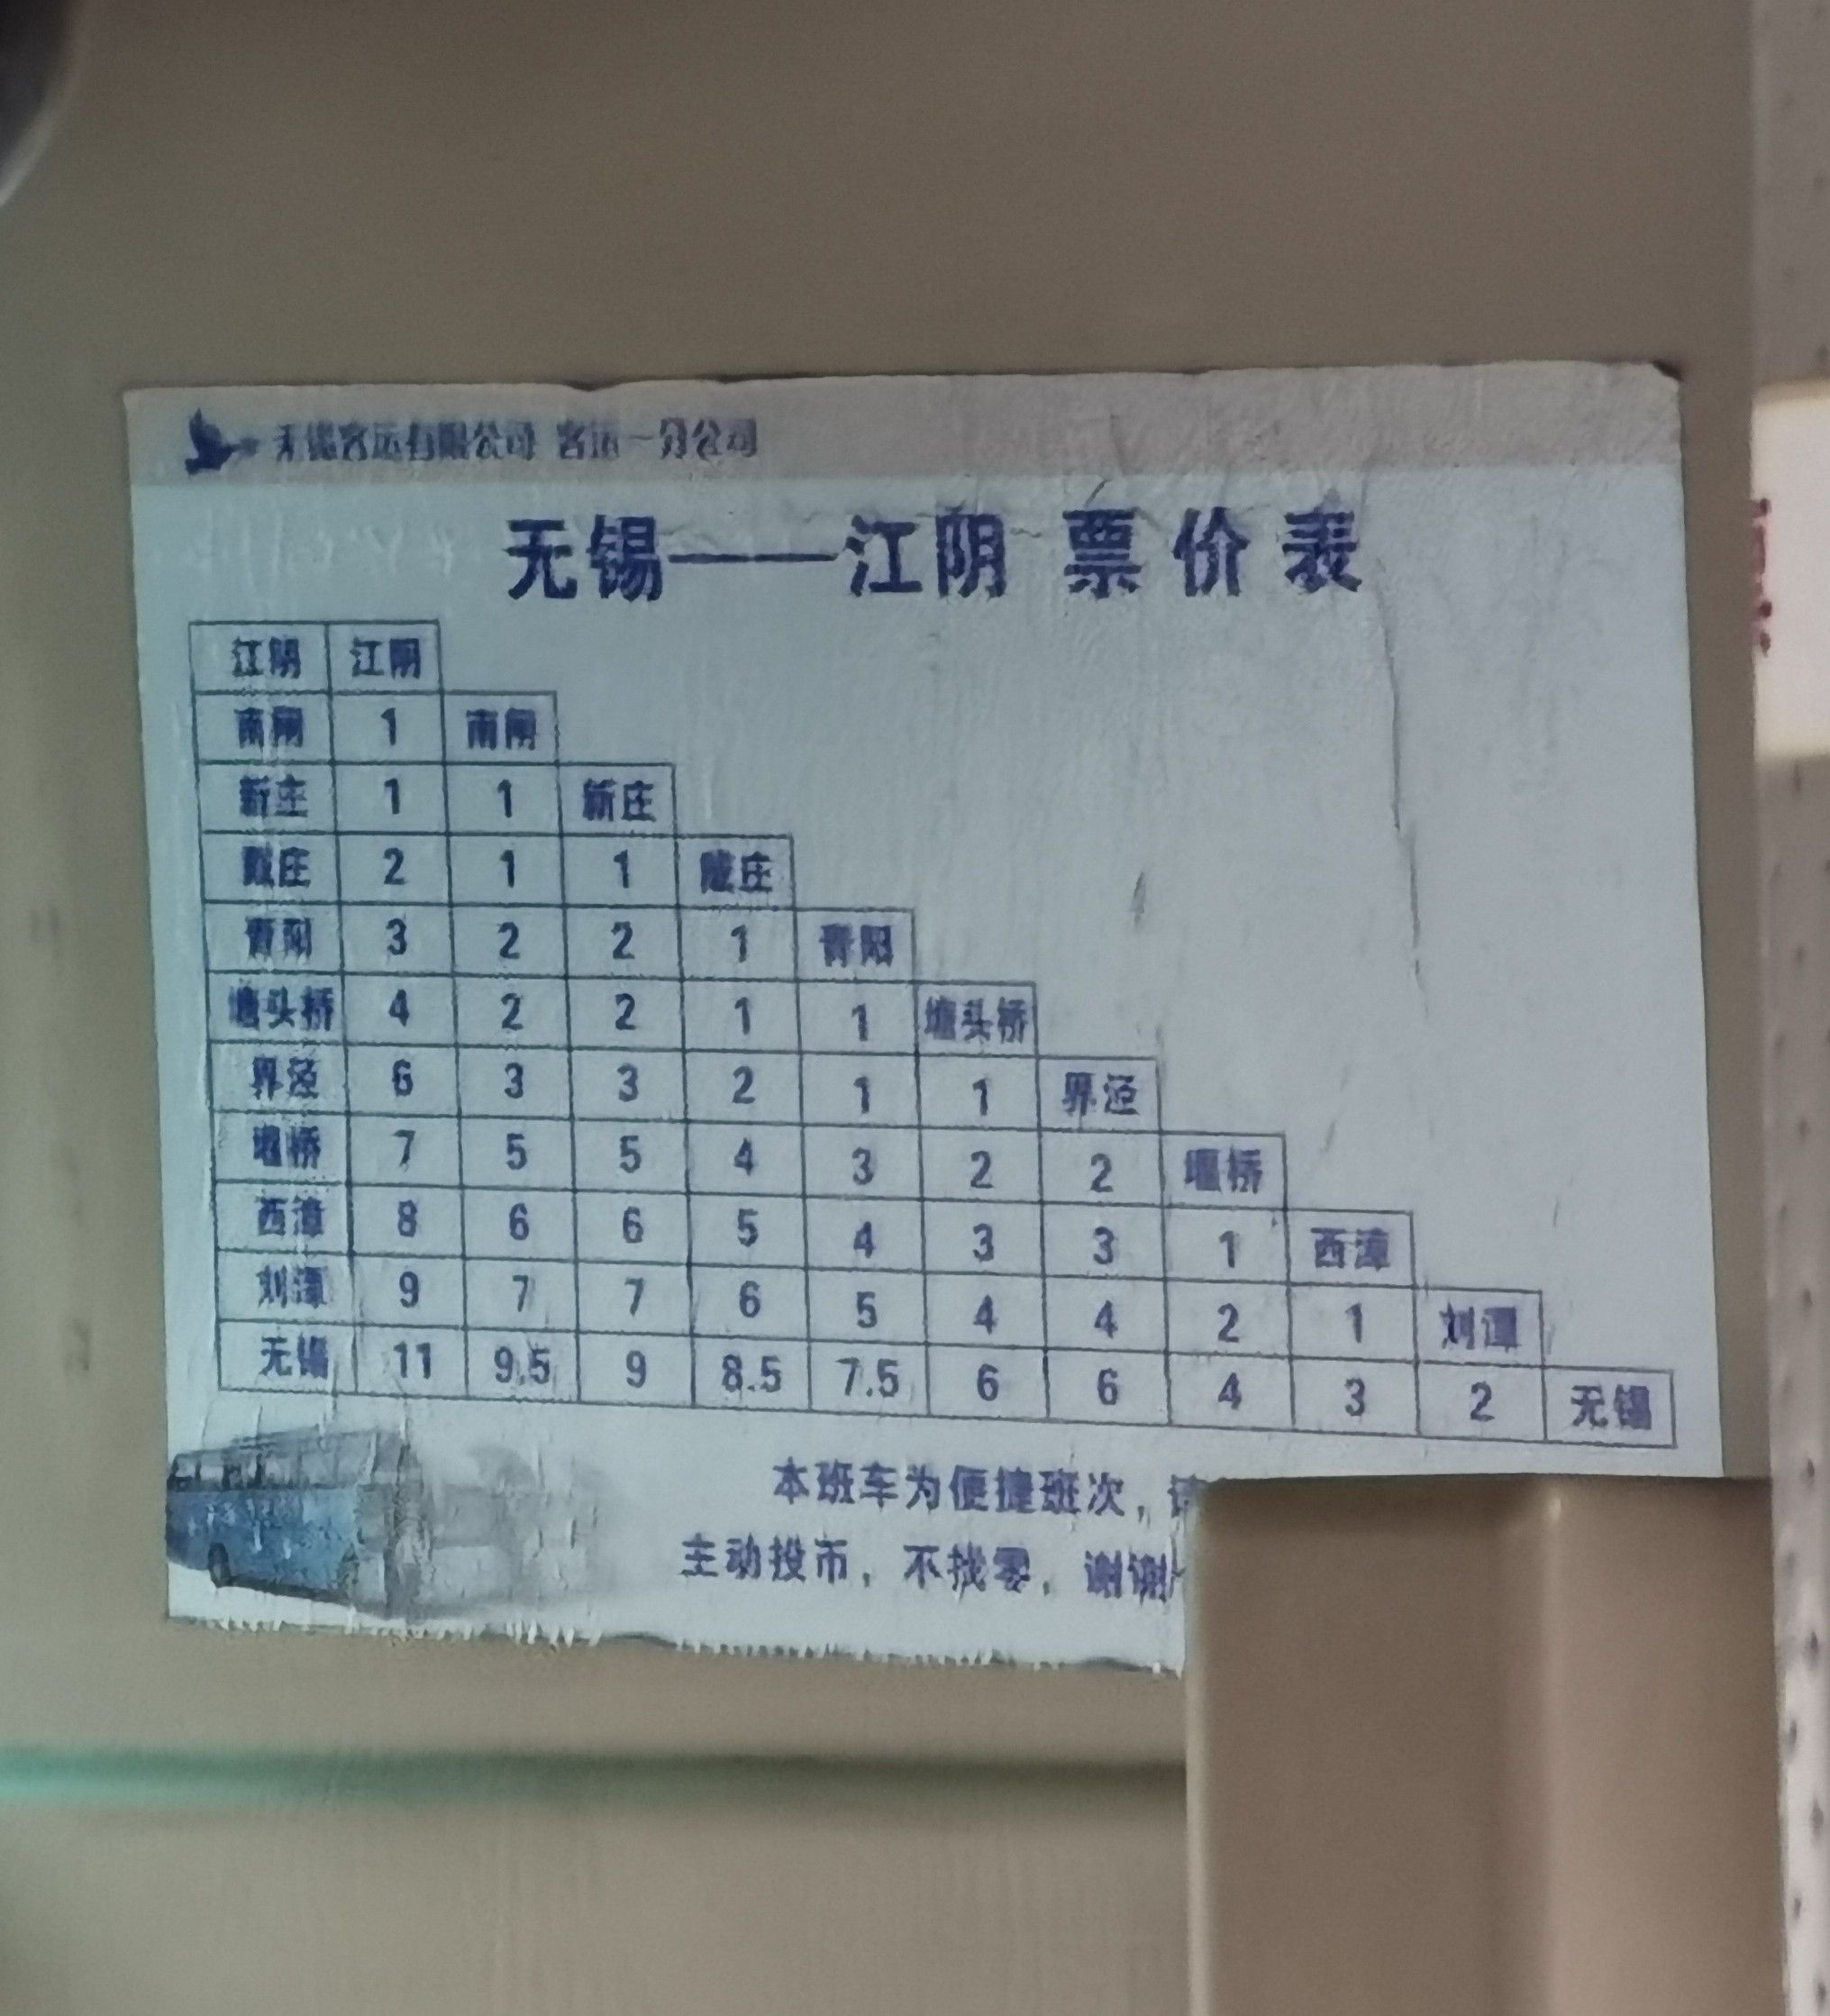 江阴江阴—无锡便捷巴士(已停运)公交车路线